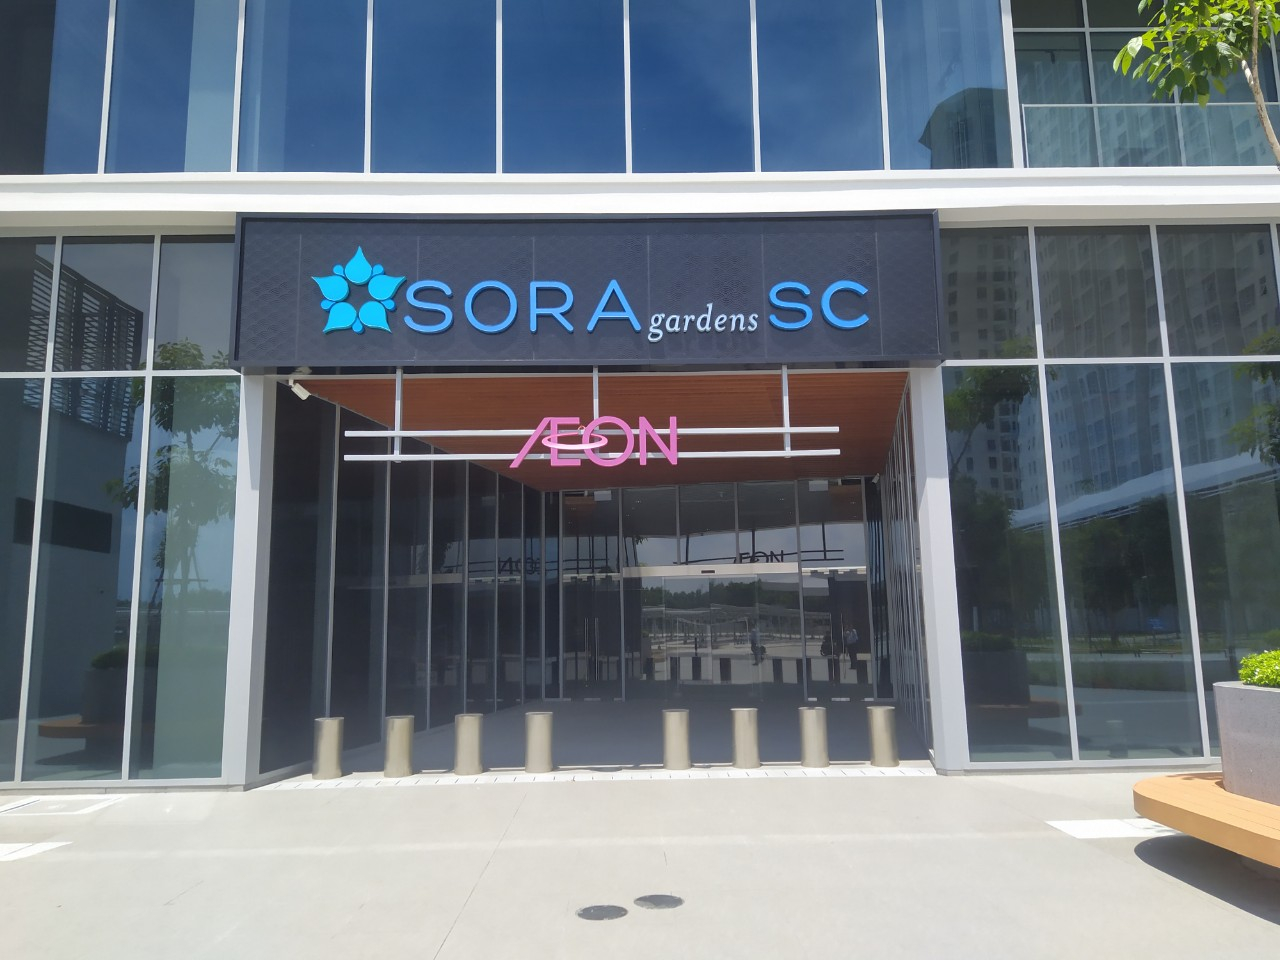 Trung tâm thương mại Sora gardens SC khai trương đi vào hoạt động